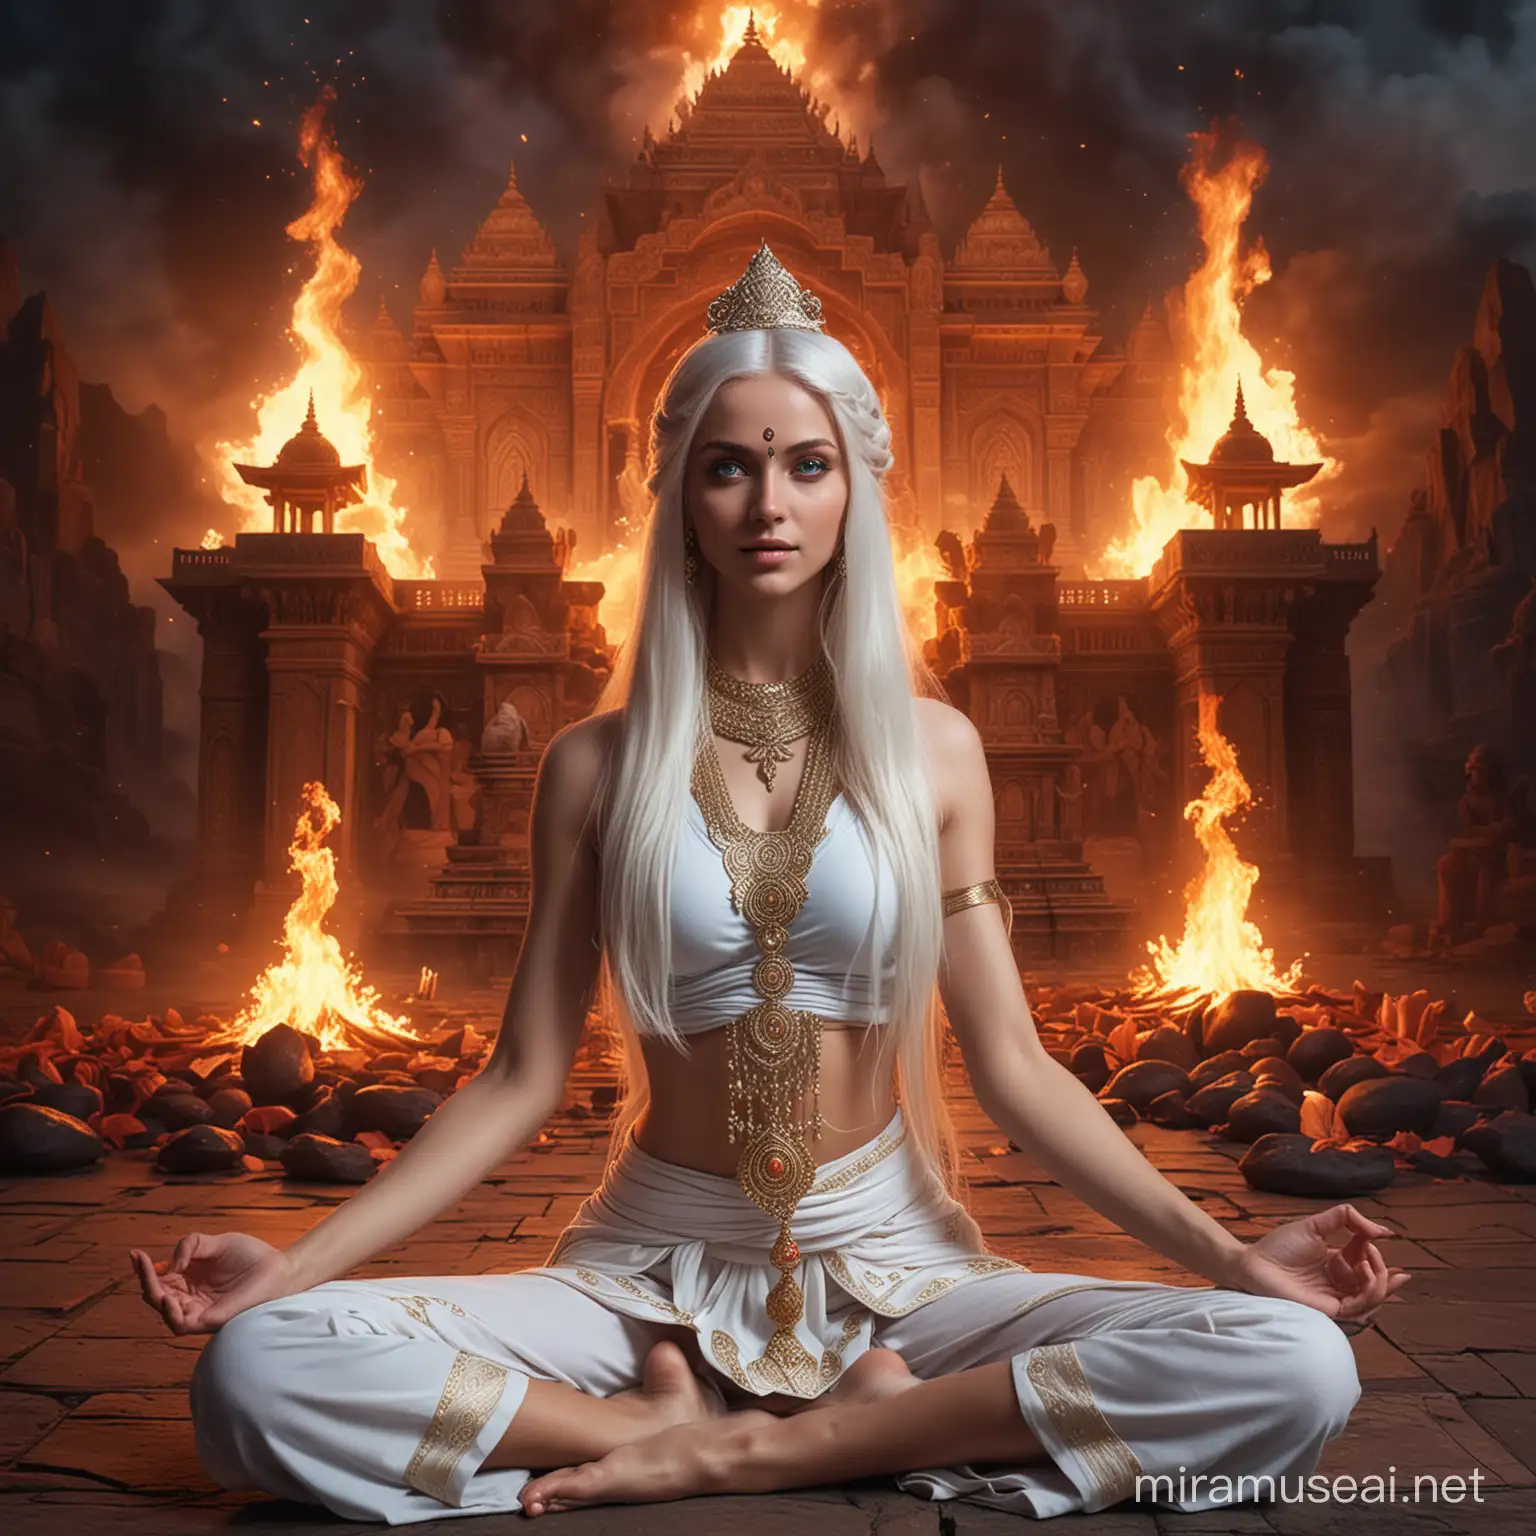 Diosa emperatriz hermosa joven de cabellos blancos largos y ojos azules vestida como Diosa emperatriz hindu en combate, sentada en posición flor de loto rodeada de fuego que sale de su ,cuerpo, y de fondo un valle tenebroso y un palacio hindu tenebroso y rodeándola diosas hindus en posición flor de loto rodeadas de círculos de fuego 